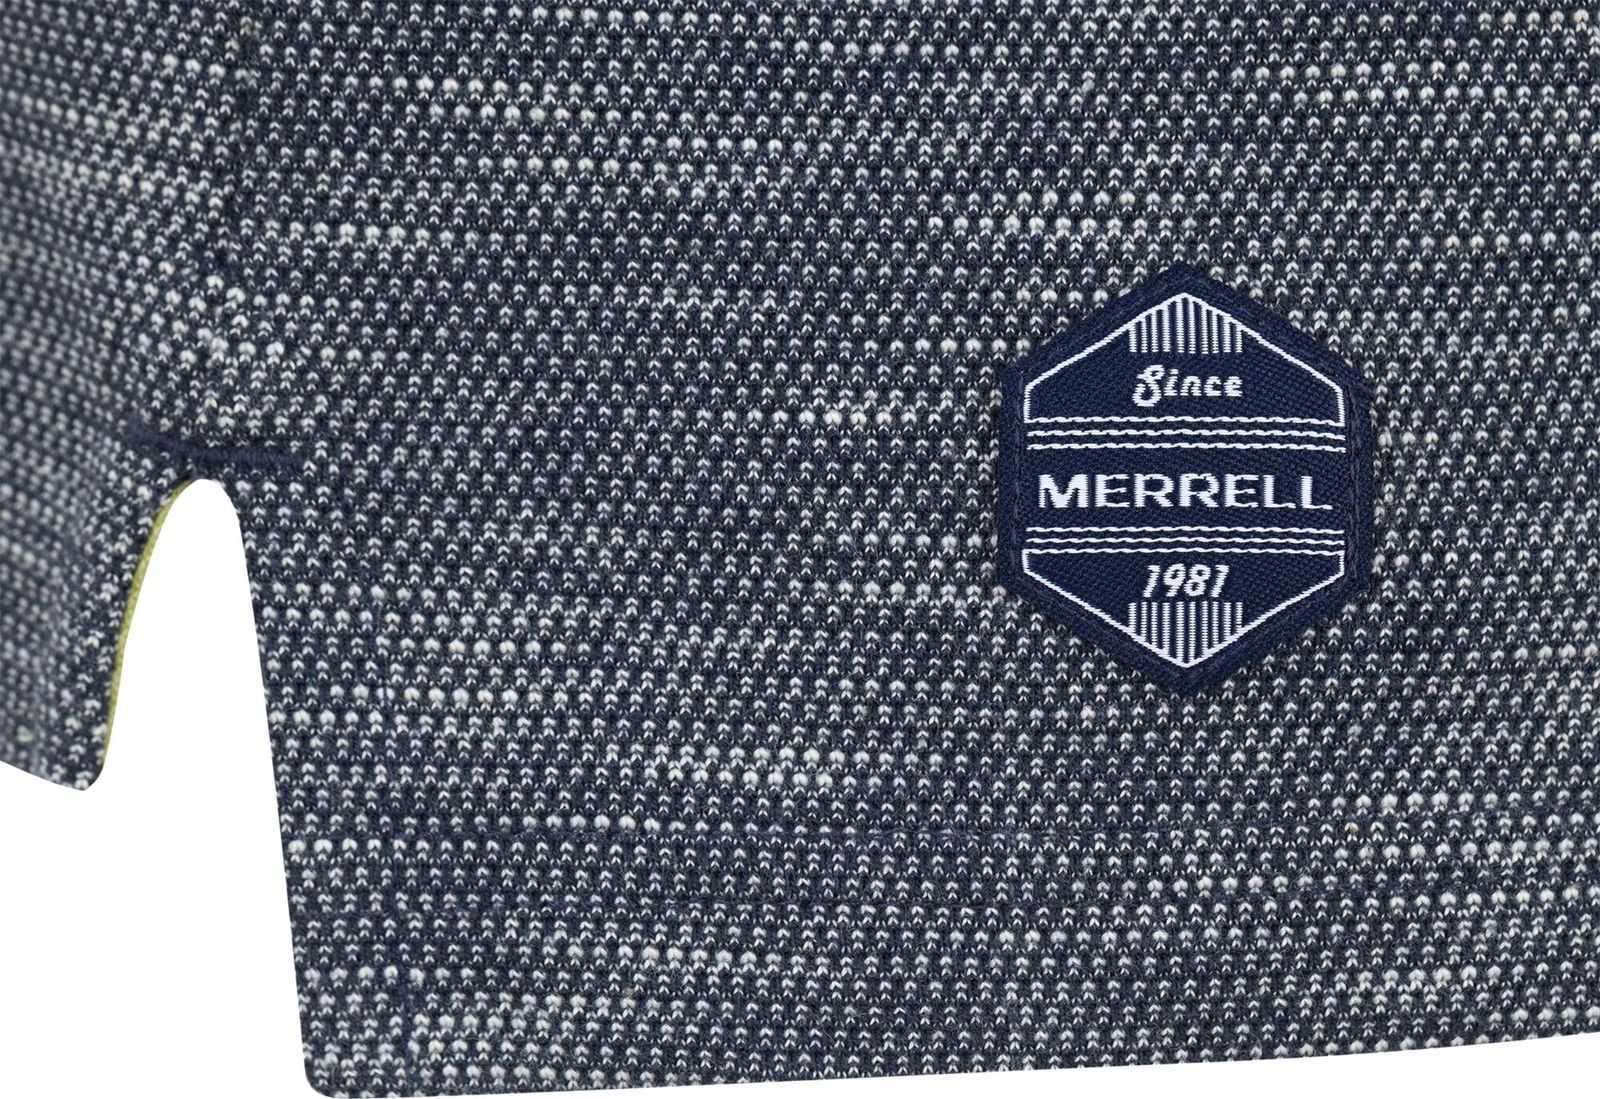   Merrell Men's Polo, : -. S17AMRPOM01-5M.  54